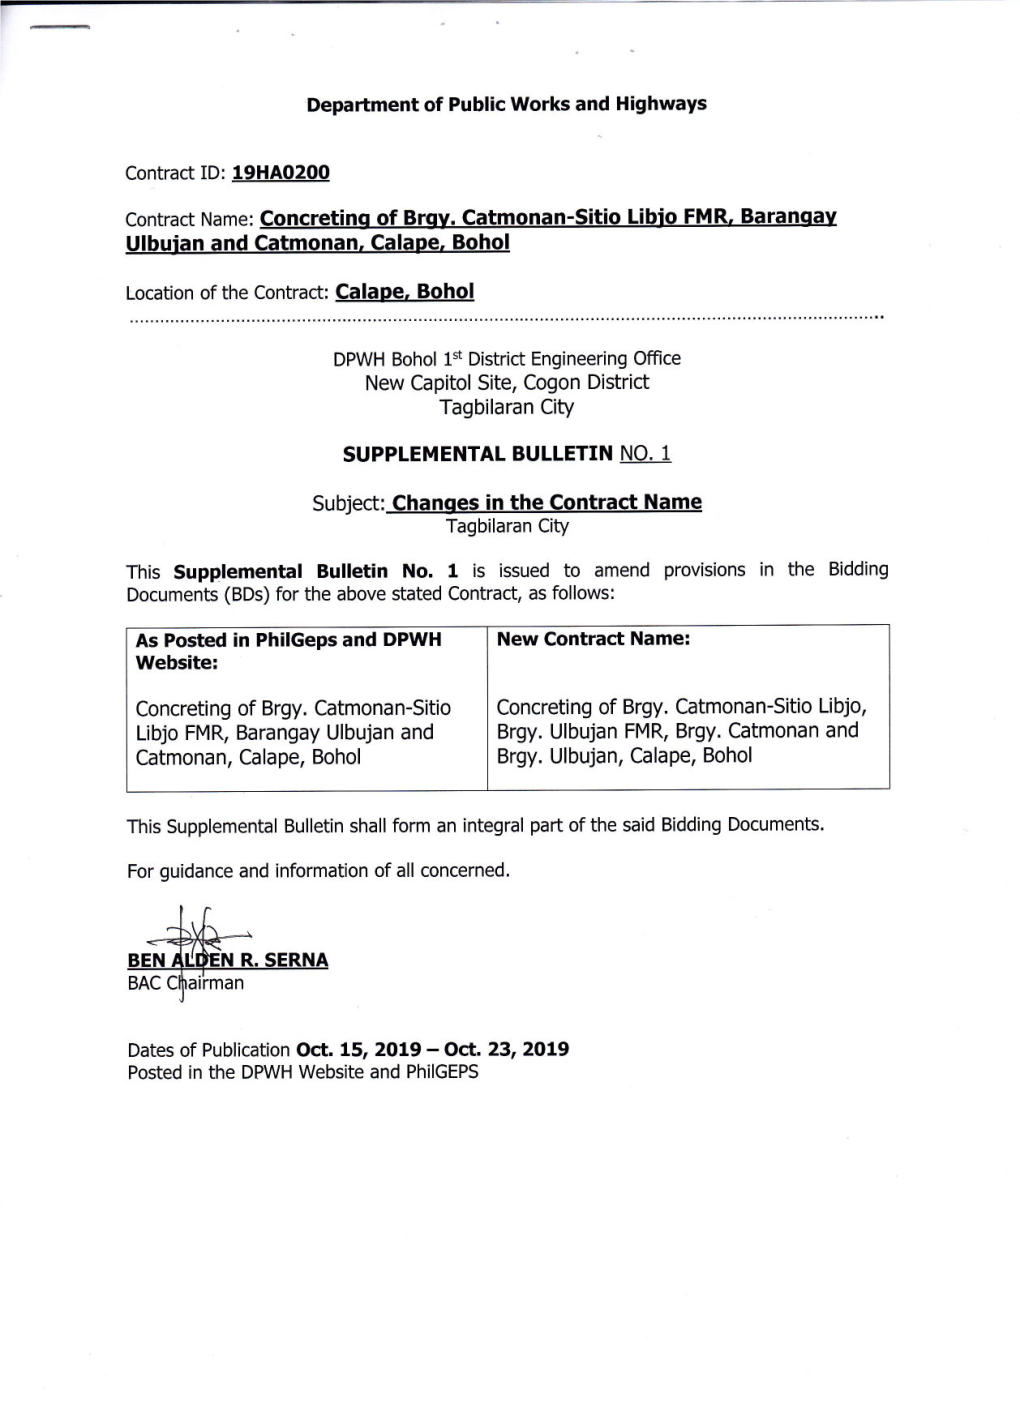 Contract Name: Concreting of Brgv. Catmonan-Sitio Libio FMR, Baranoav Ulbujan and Catmonan, Calape, Bohol